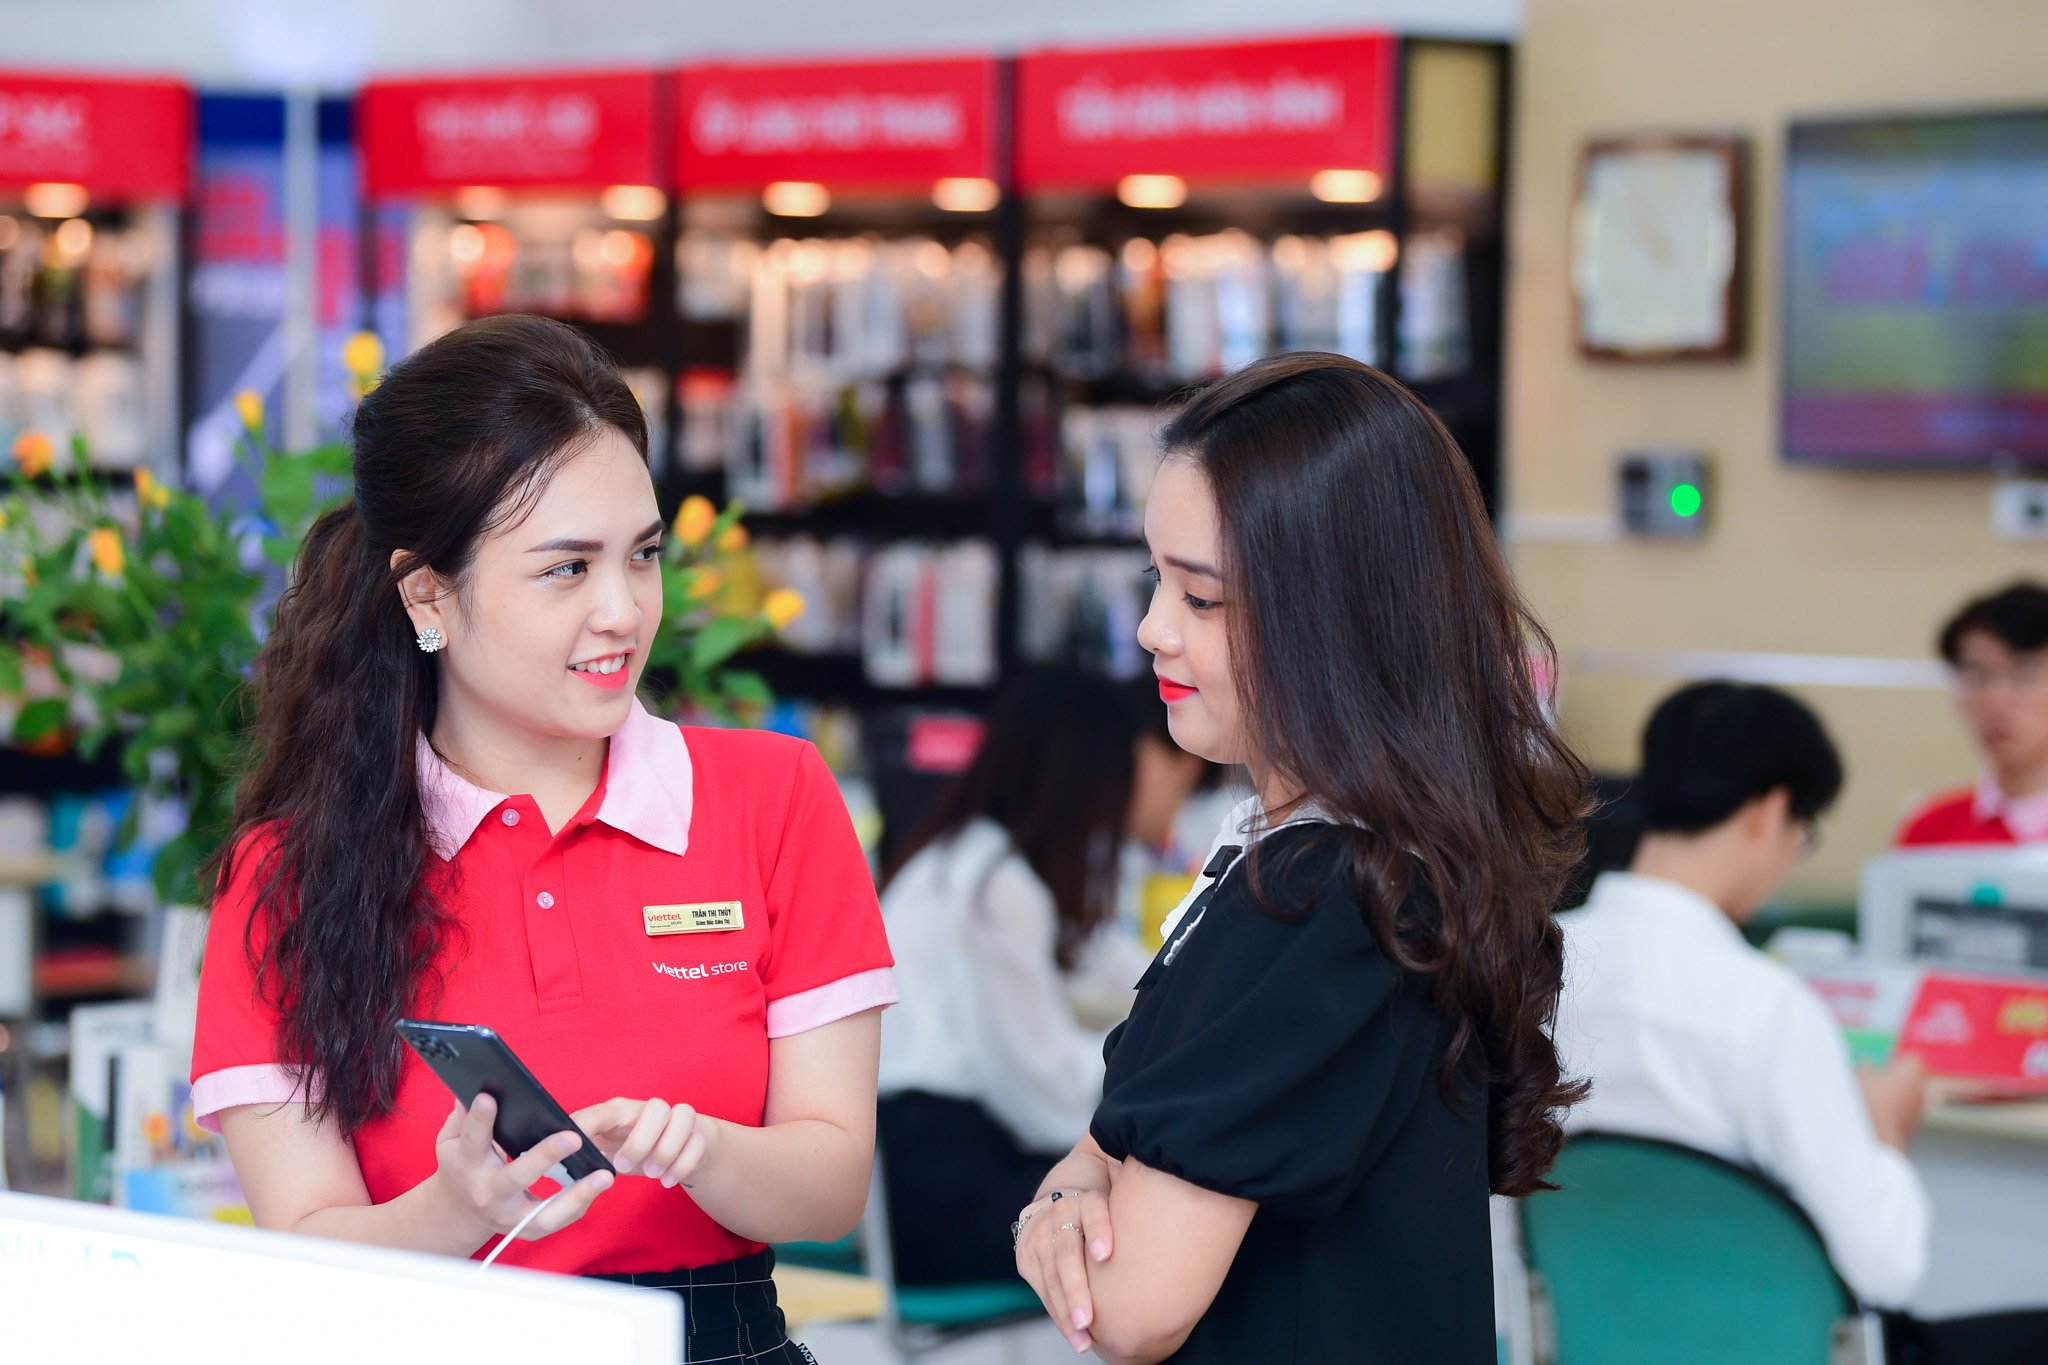 Doanh thu Viettel Store tăng trưởng gần 40% so với cùng kỳ năm trước | Công nghệ | Vietnam+ (VietnamPlus)